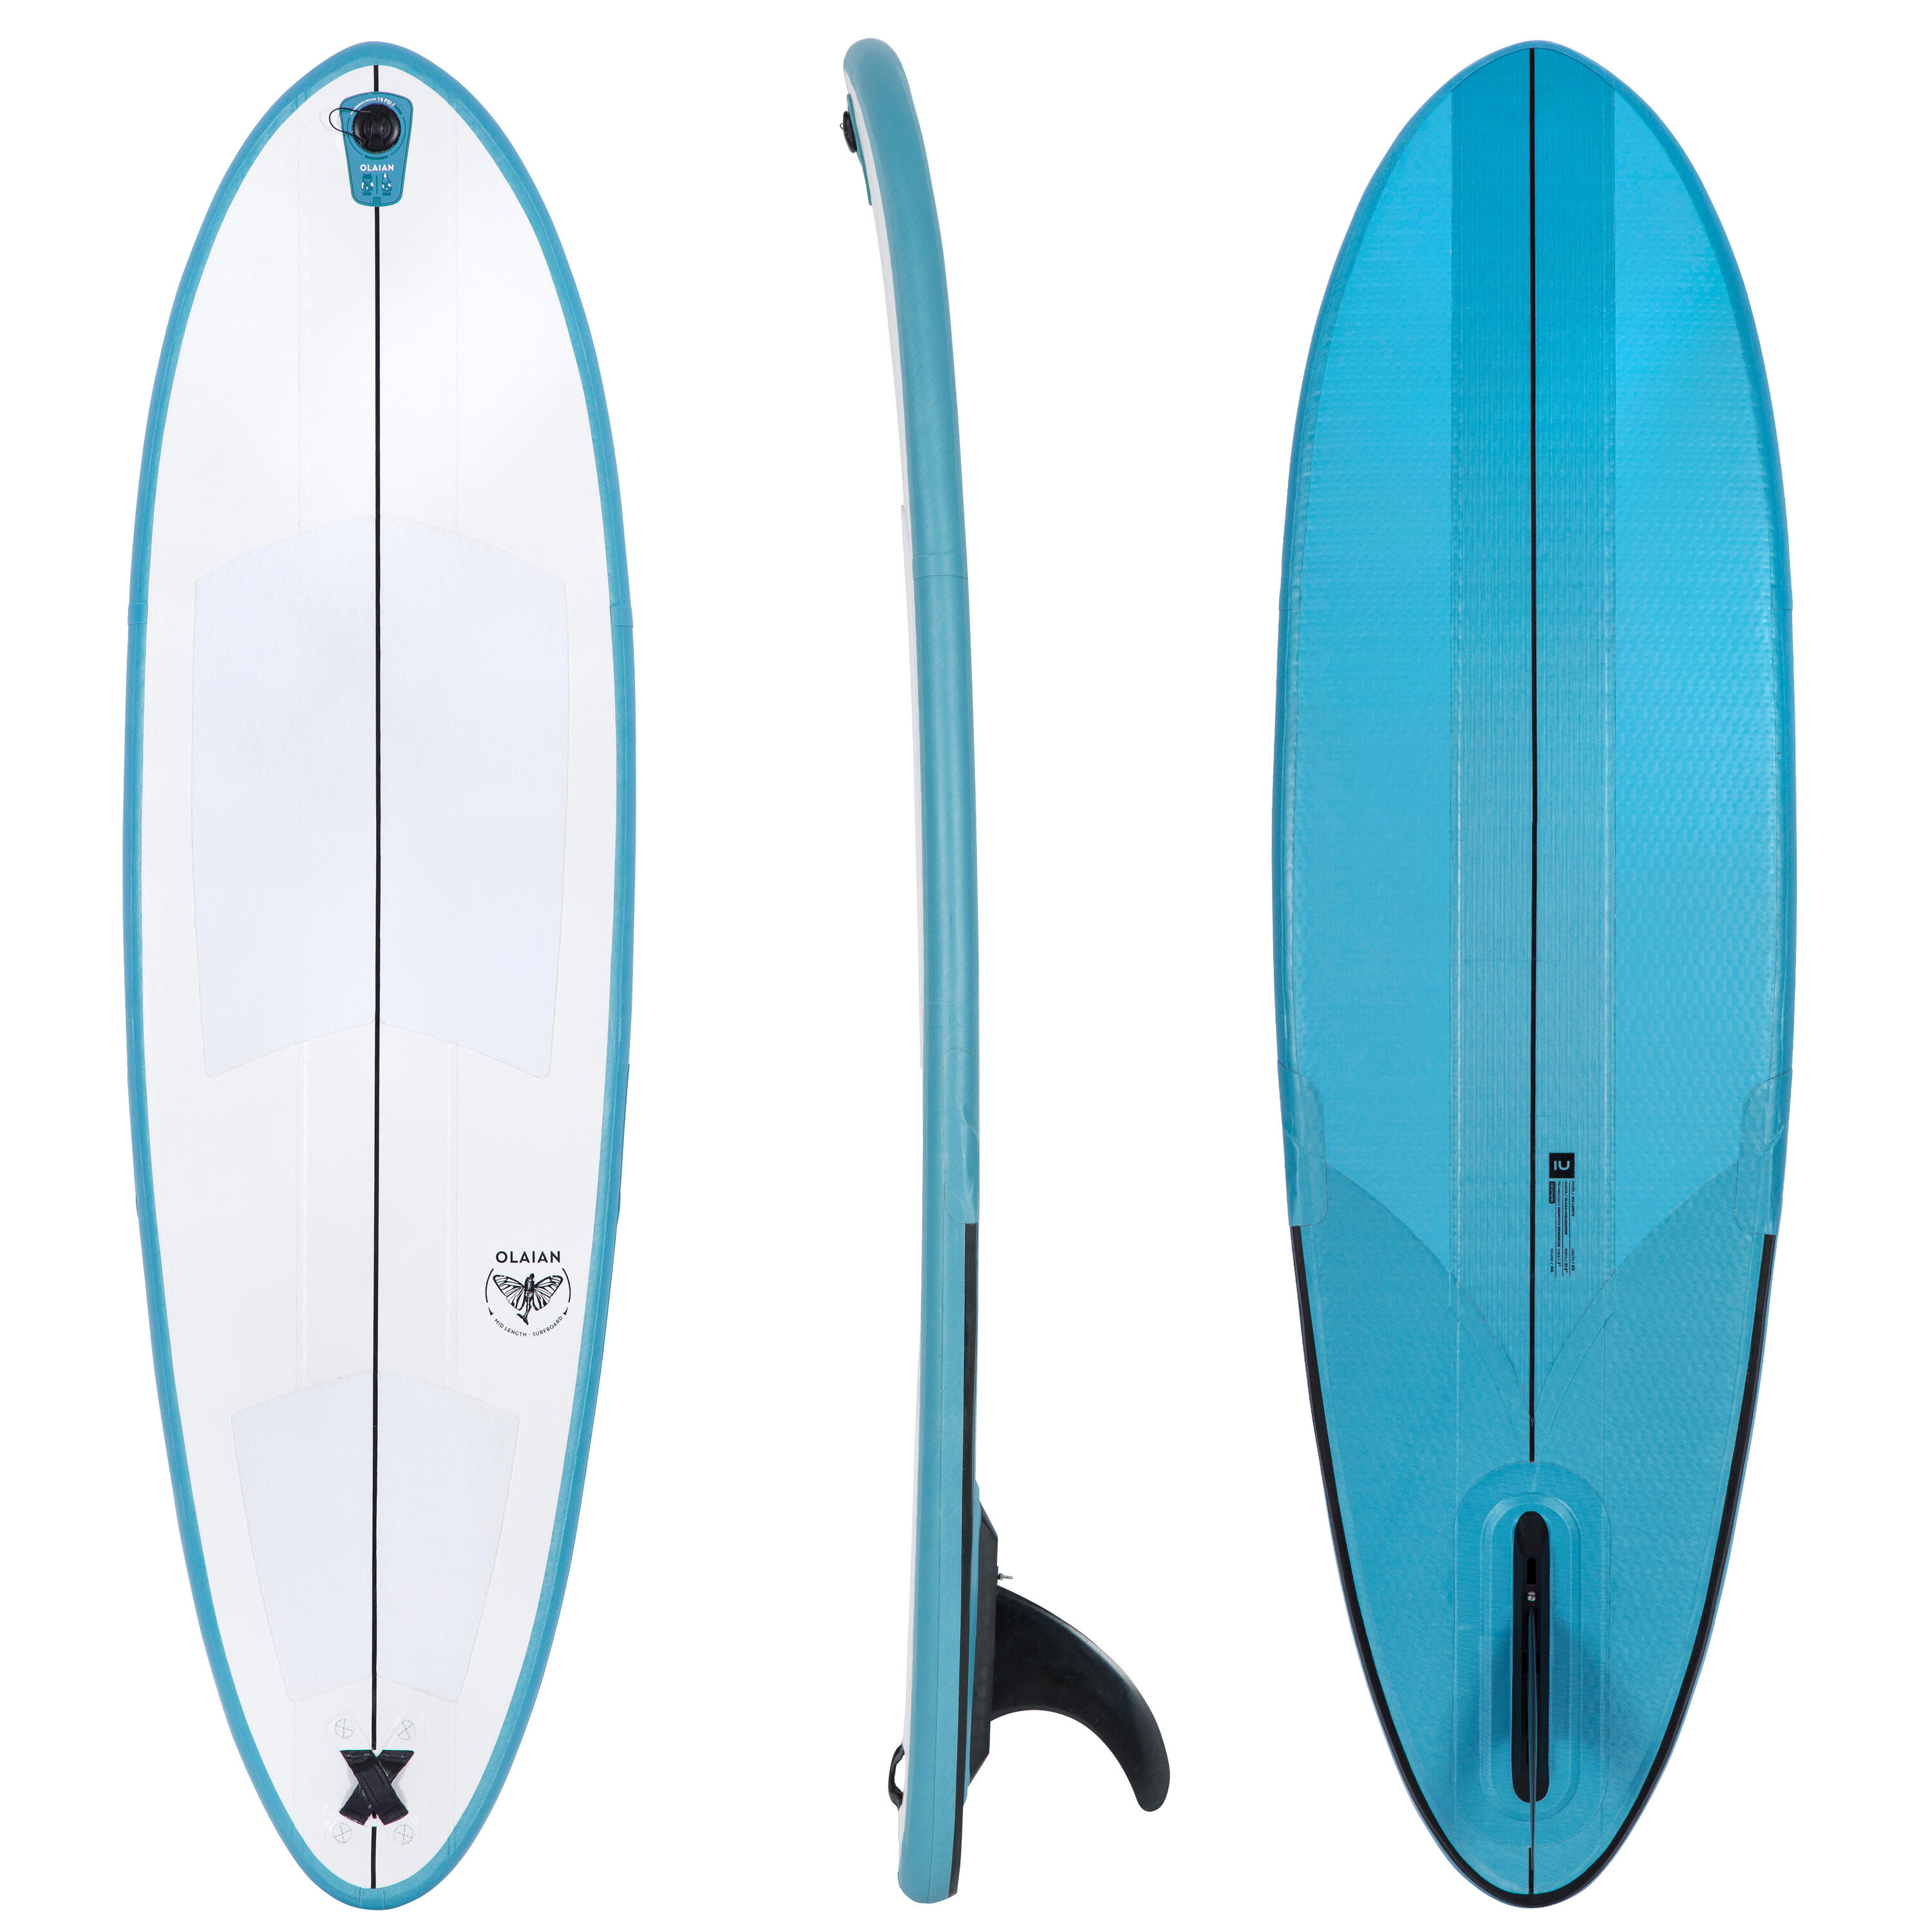 Placă surf gonflabilă 500 6’6″ Compact (fără pompă și leash) La Oferta Online decathlon imagine La Oferta Online